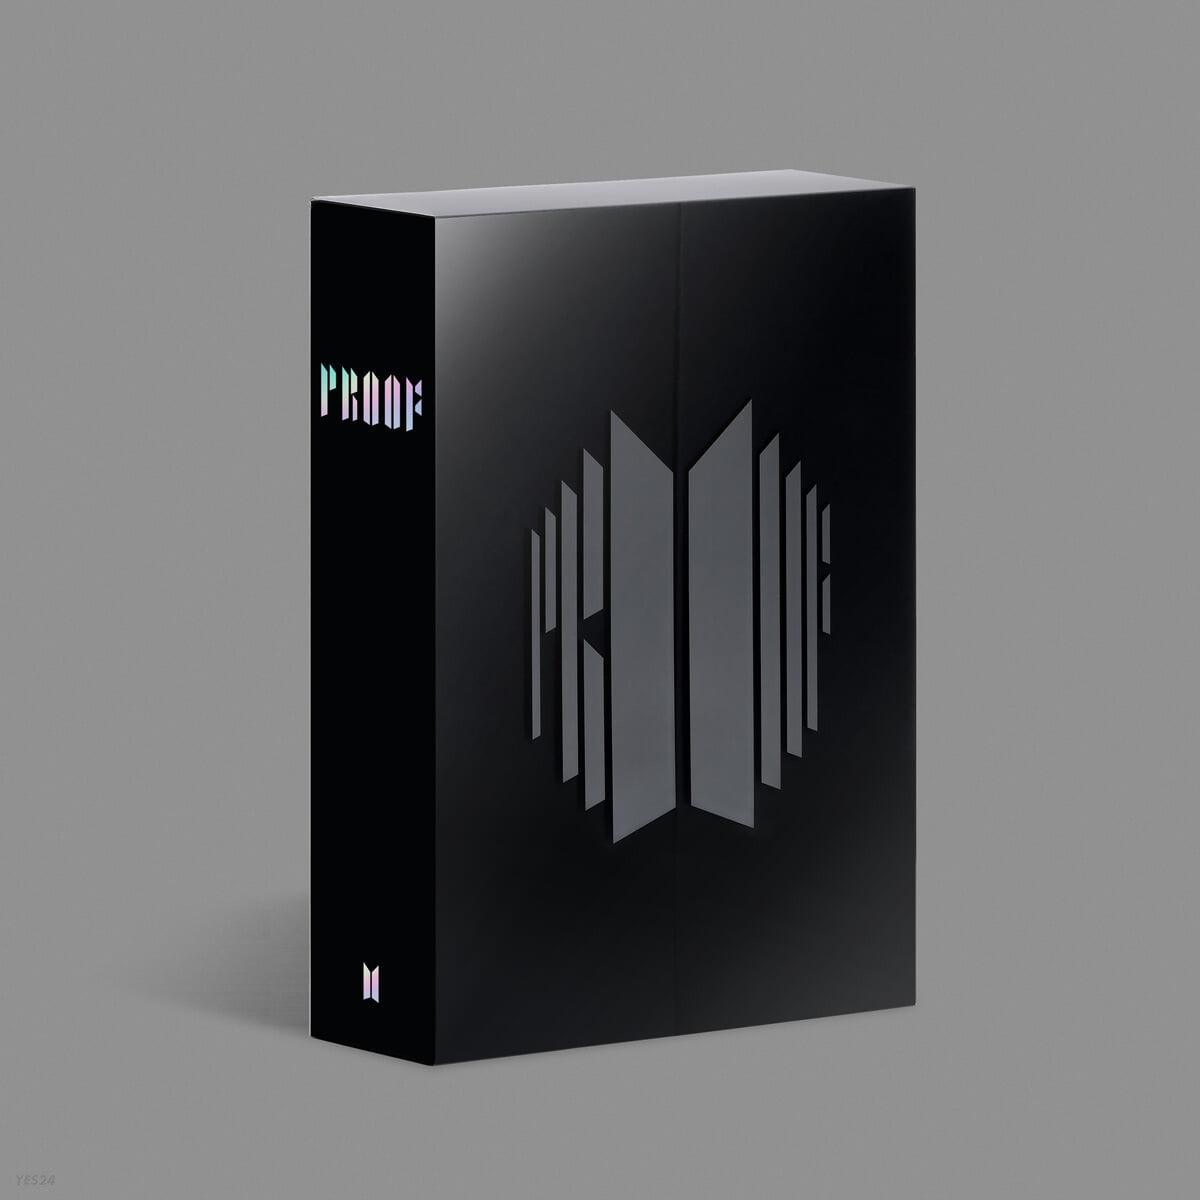 BTS - Proof (Standard Edition) (3 CD) - KKANG